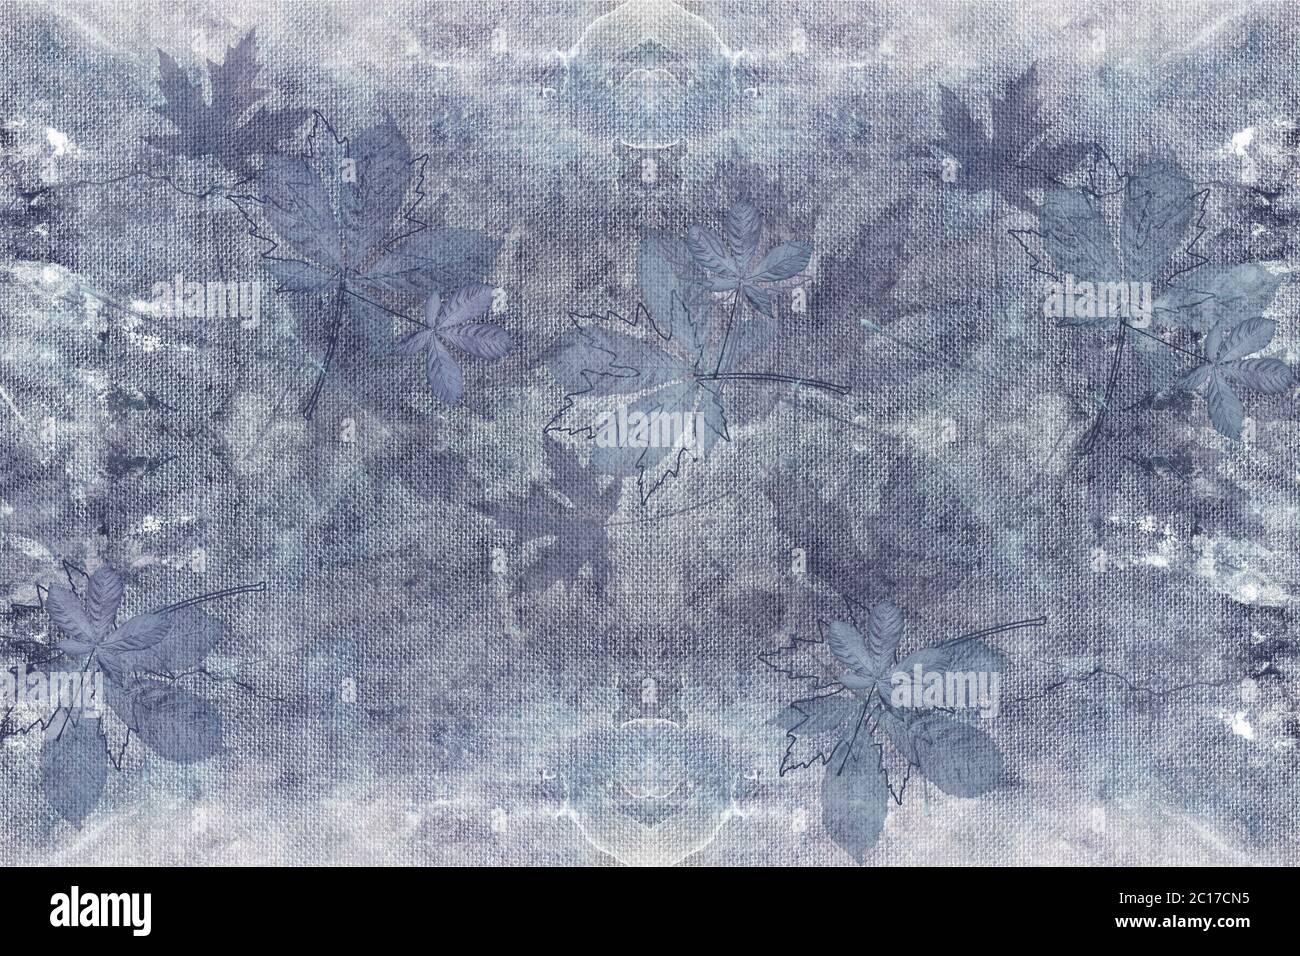 sfondo 3d, foglie d'acero sulla trama di tela di tessuto. Colore denim Foto Stock